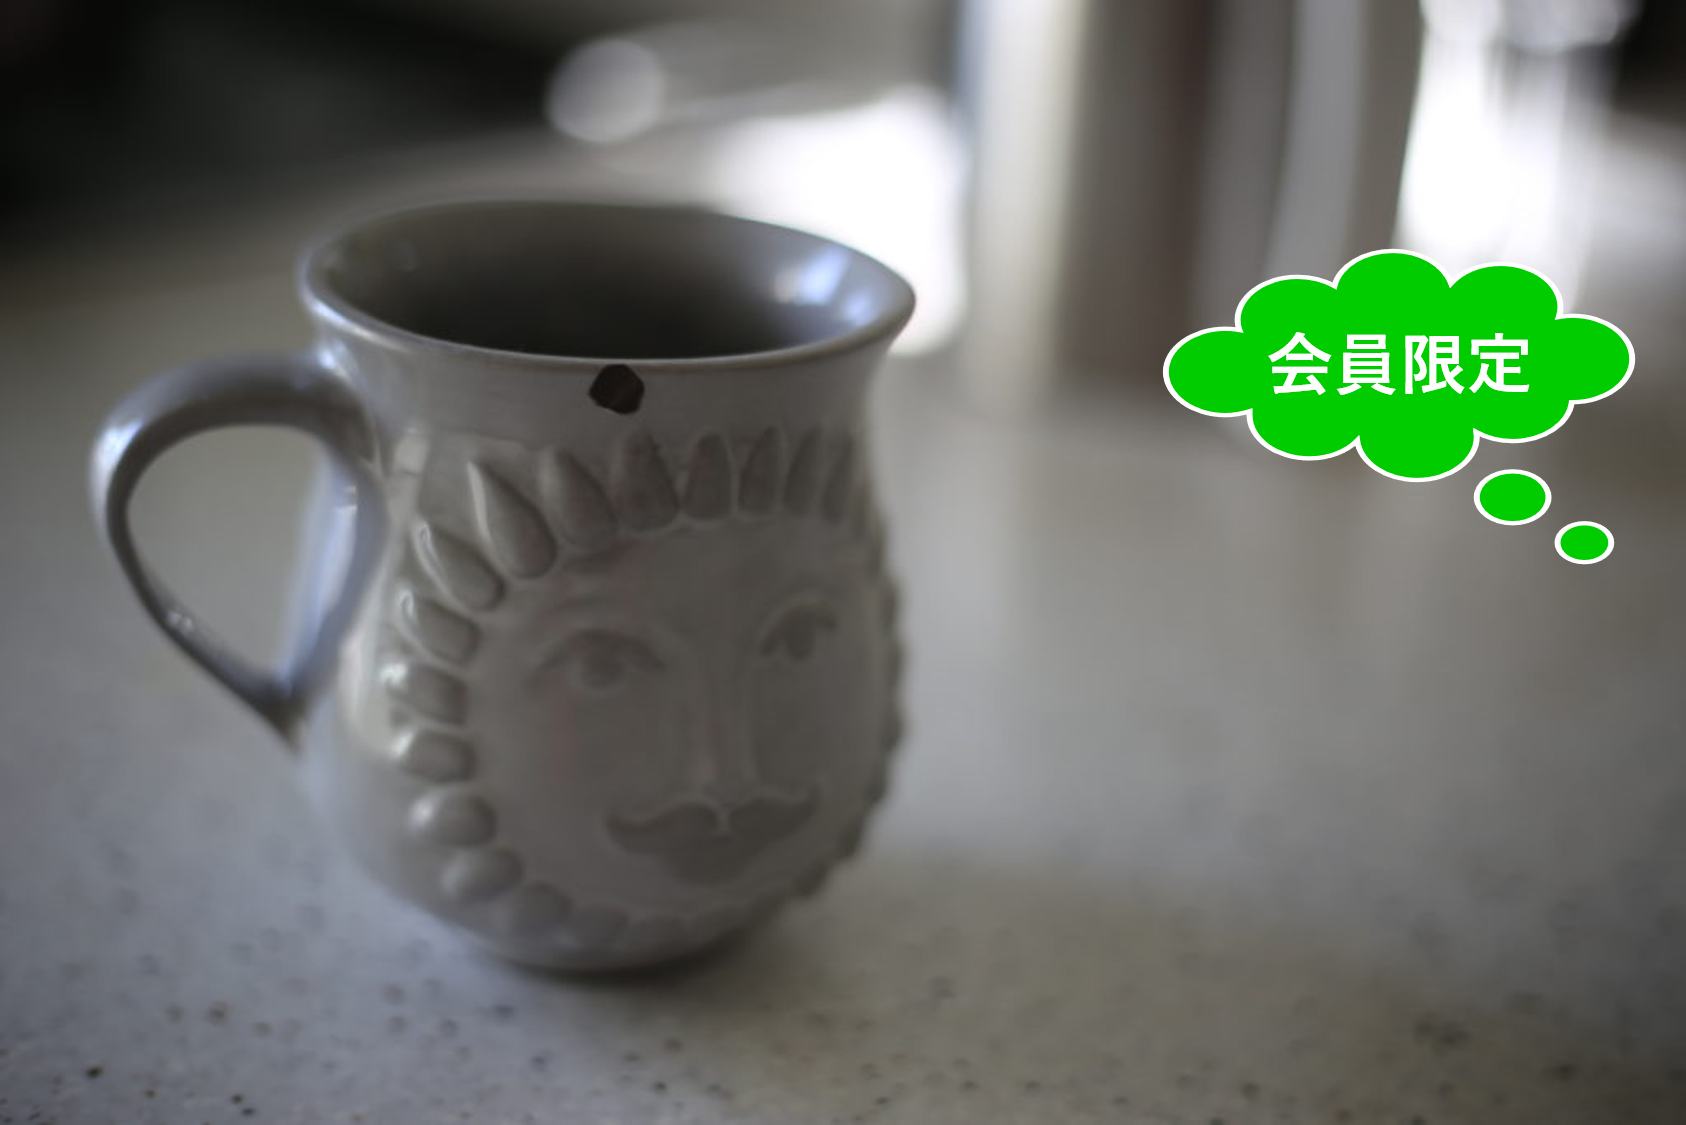 【会員限定】5千円のマグカップが欠けてしまい、それを修理した話